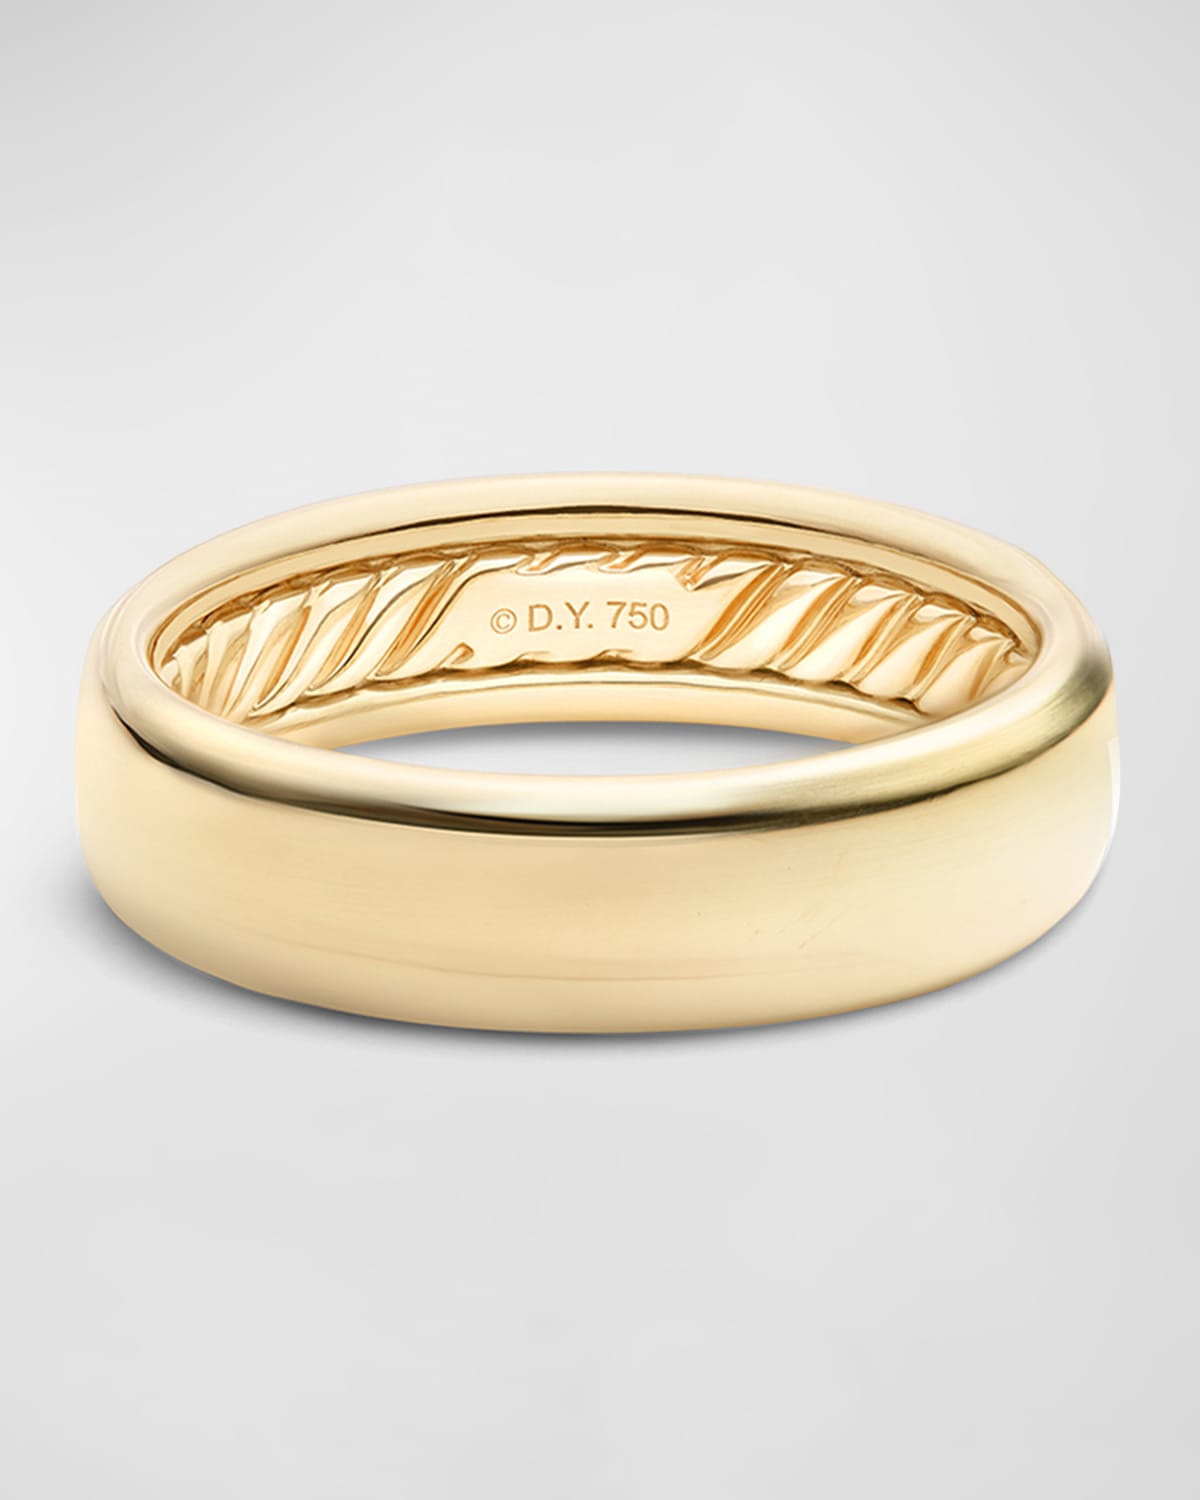 Shop David Yurman Men's Dy Classic Band Ring In 18k Gold, 6mm